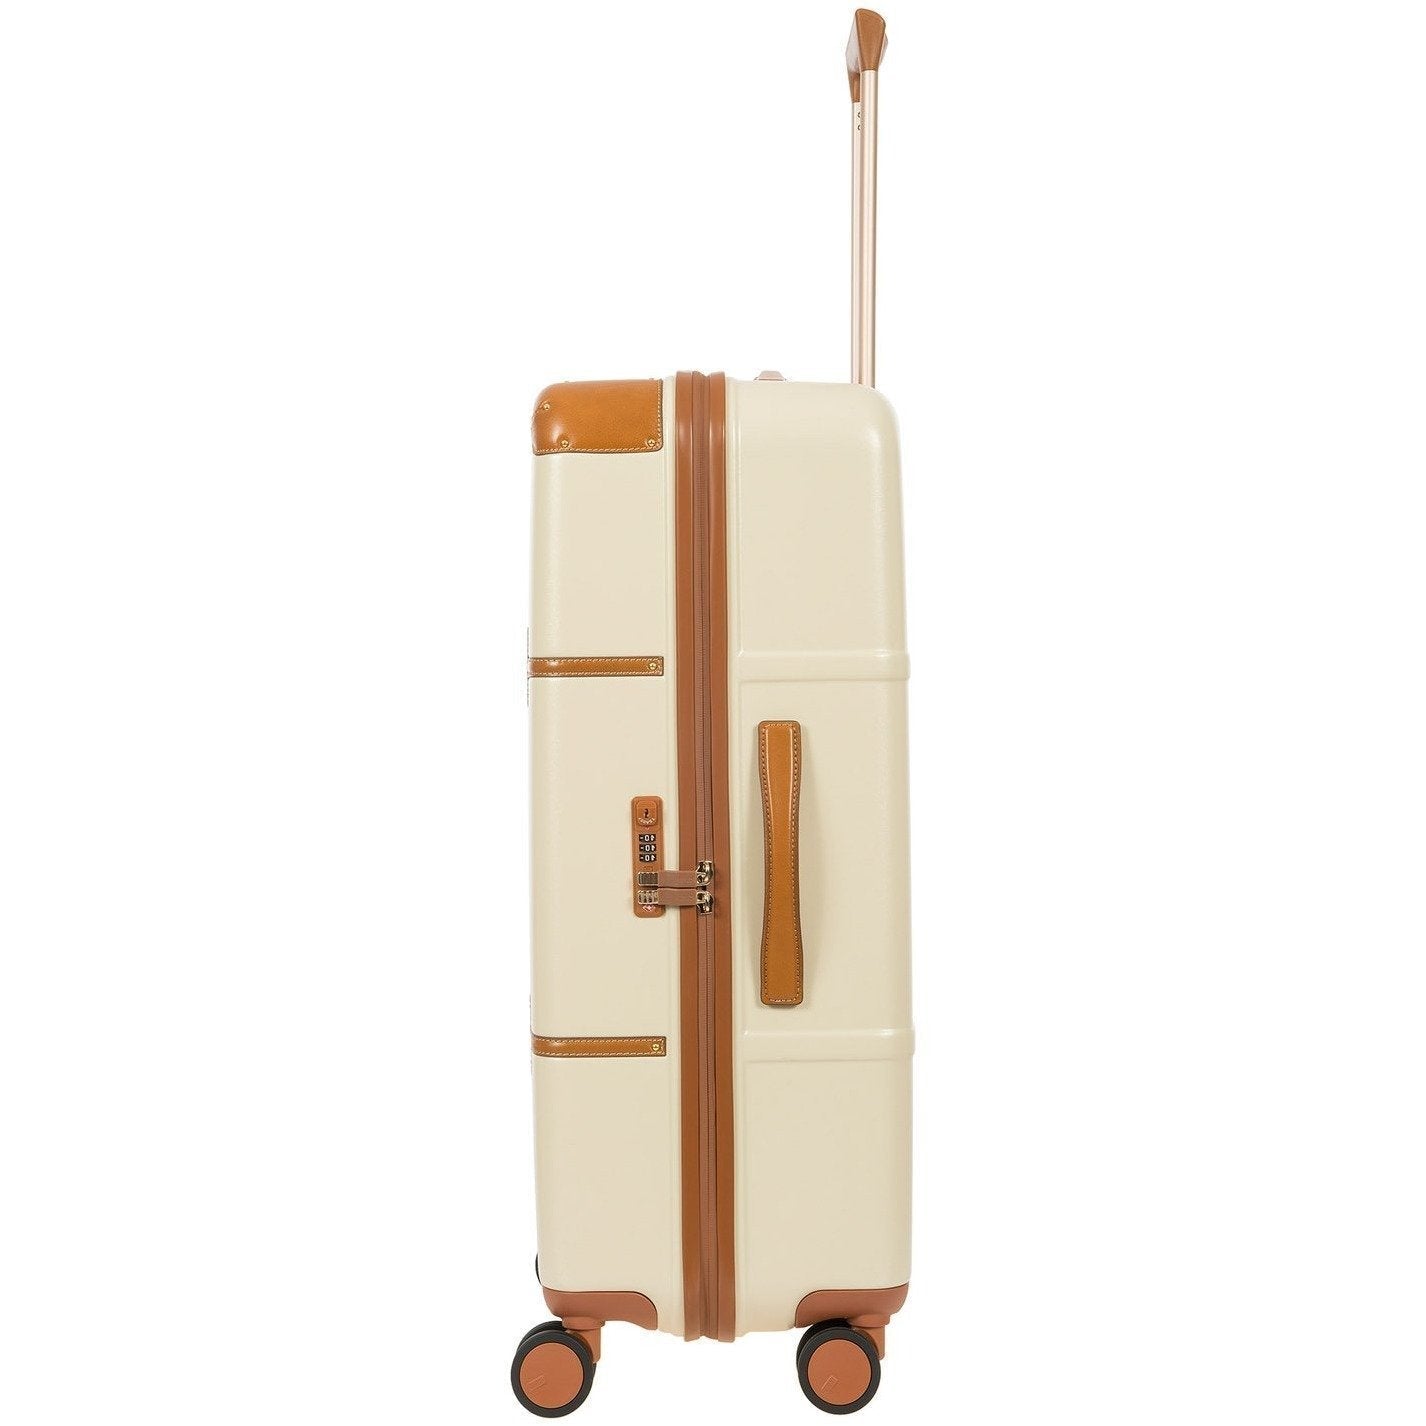 Gio 76cm Spinner Trunk | Cream-Suitcases